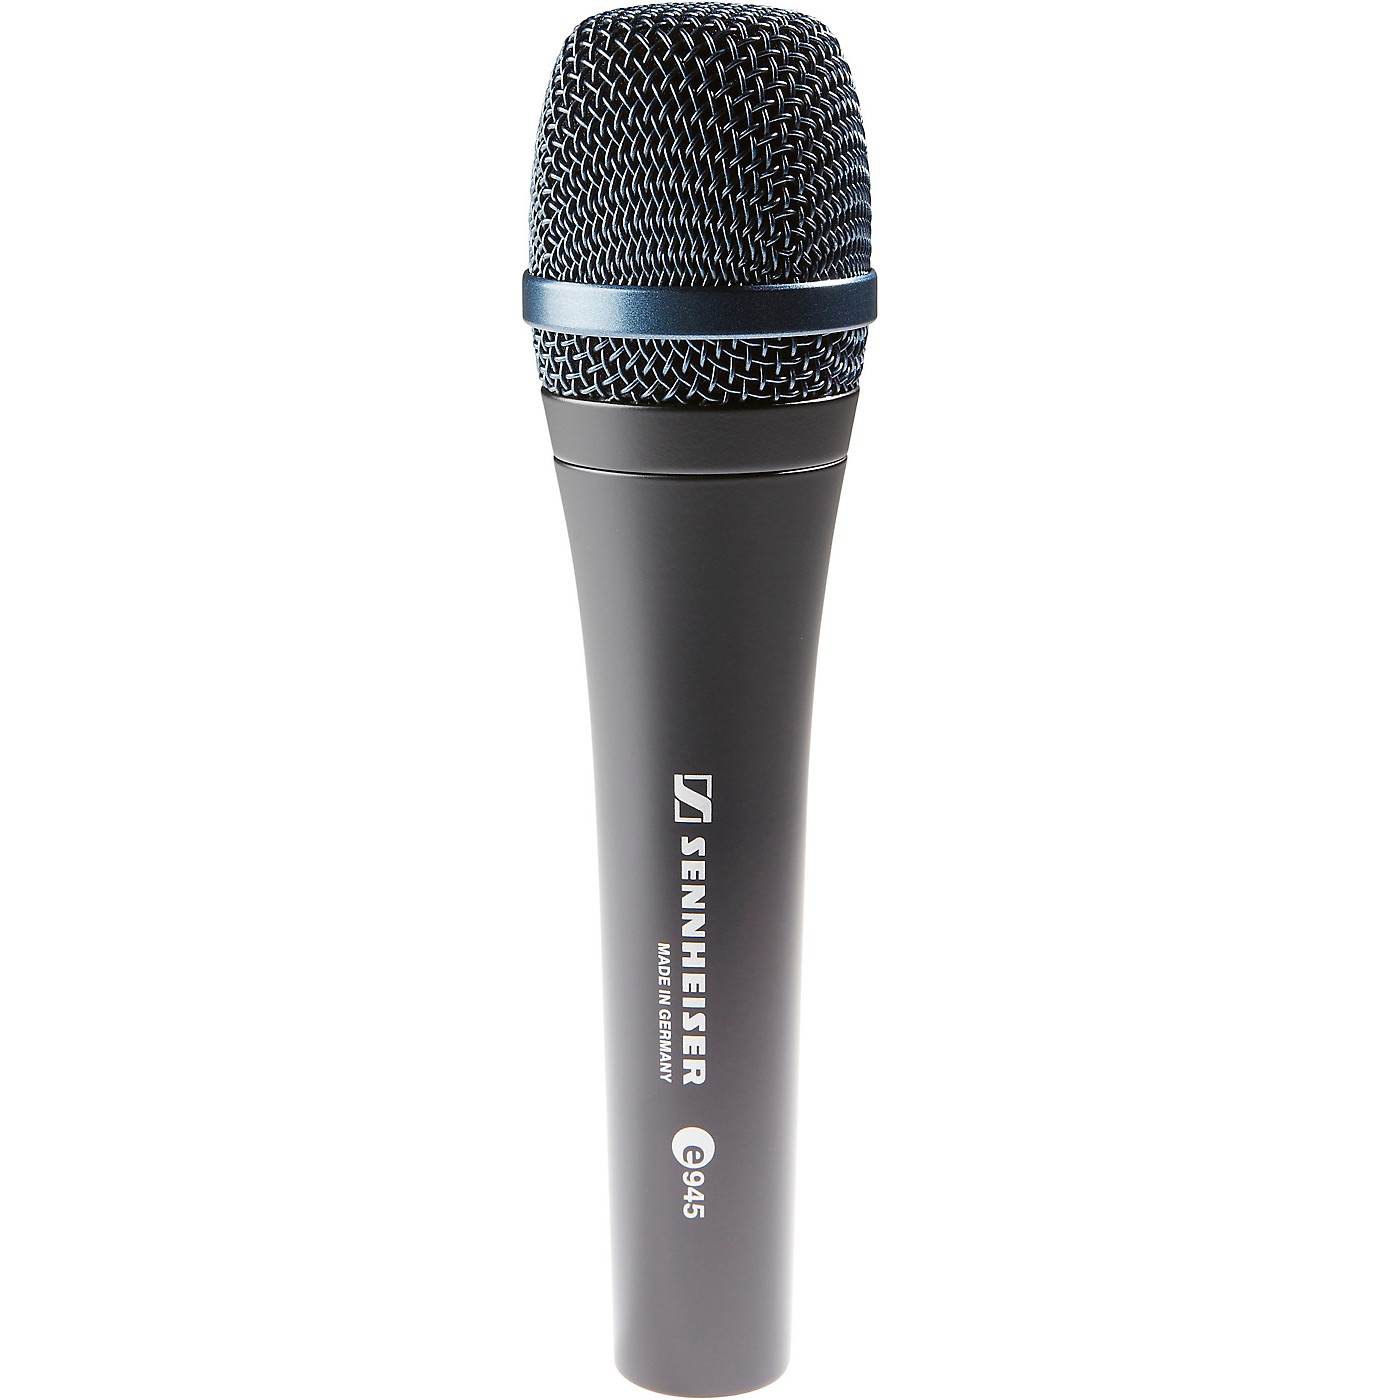 Sennheiser e 945 Supercardioid Dynamic Microphone thumbnail